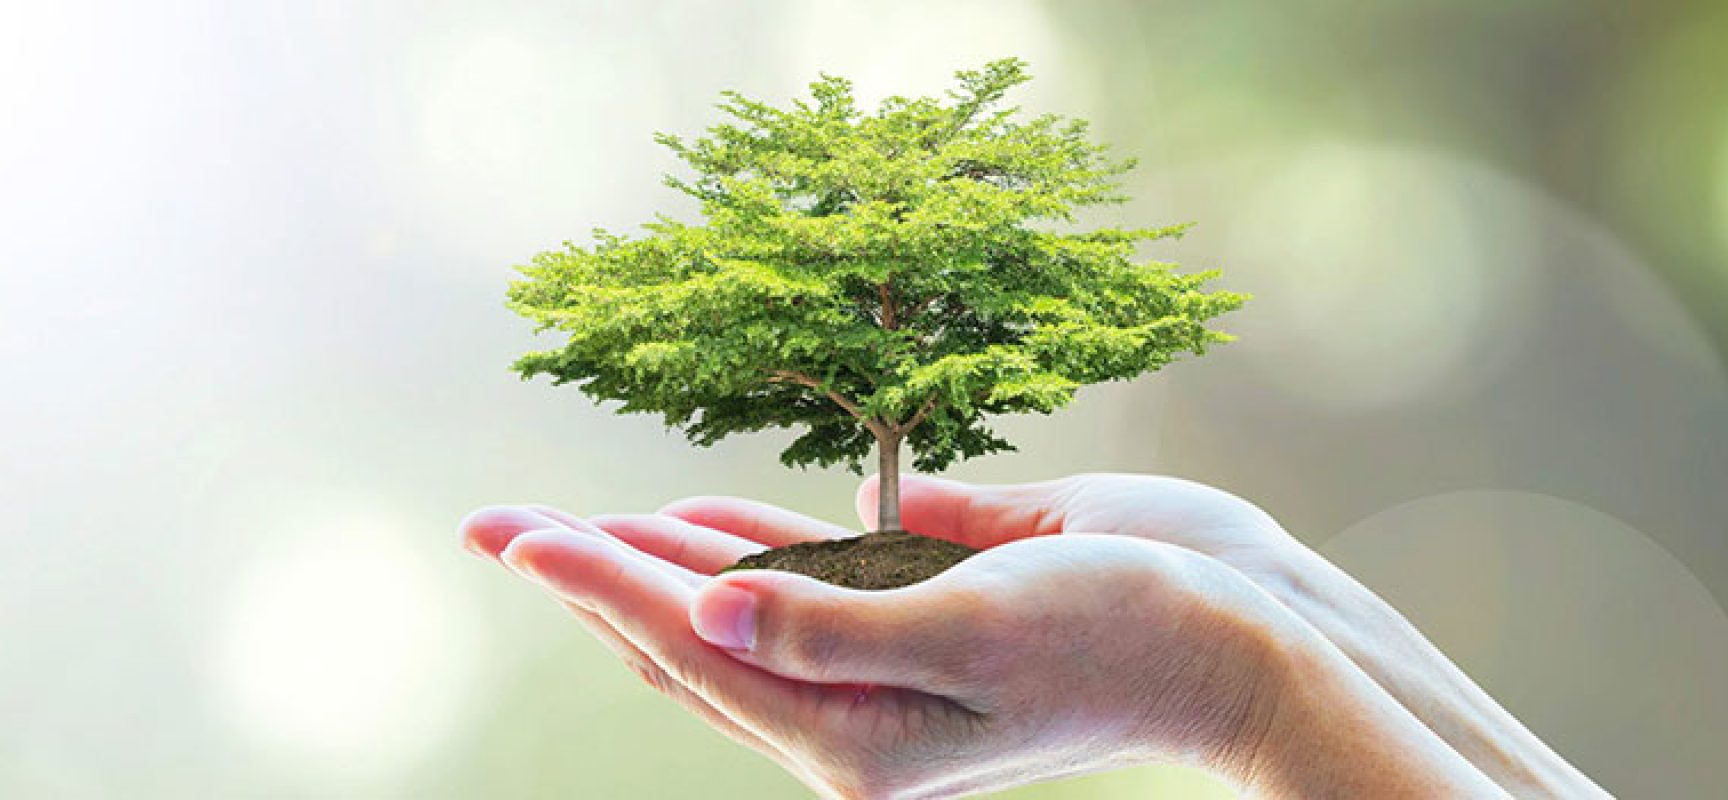 L’appello di Pro Natura:  “Amministrazione pianti un albero per ogni nato”